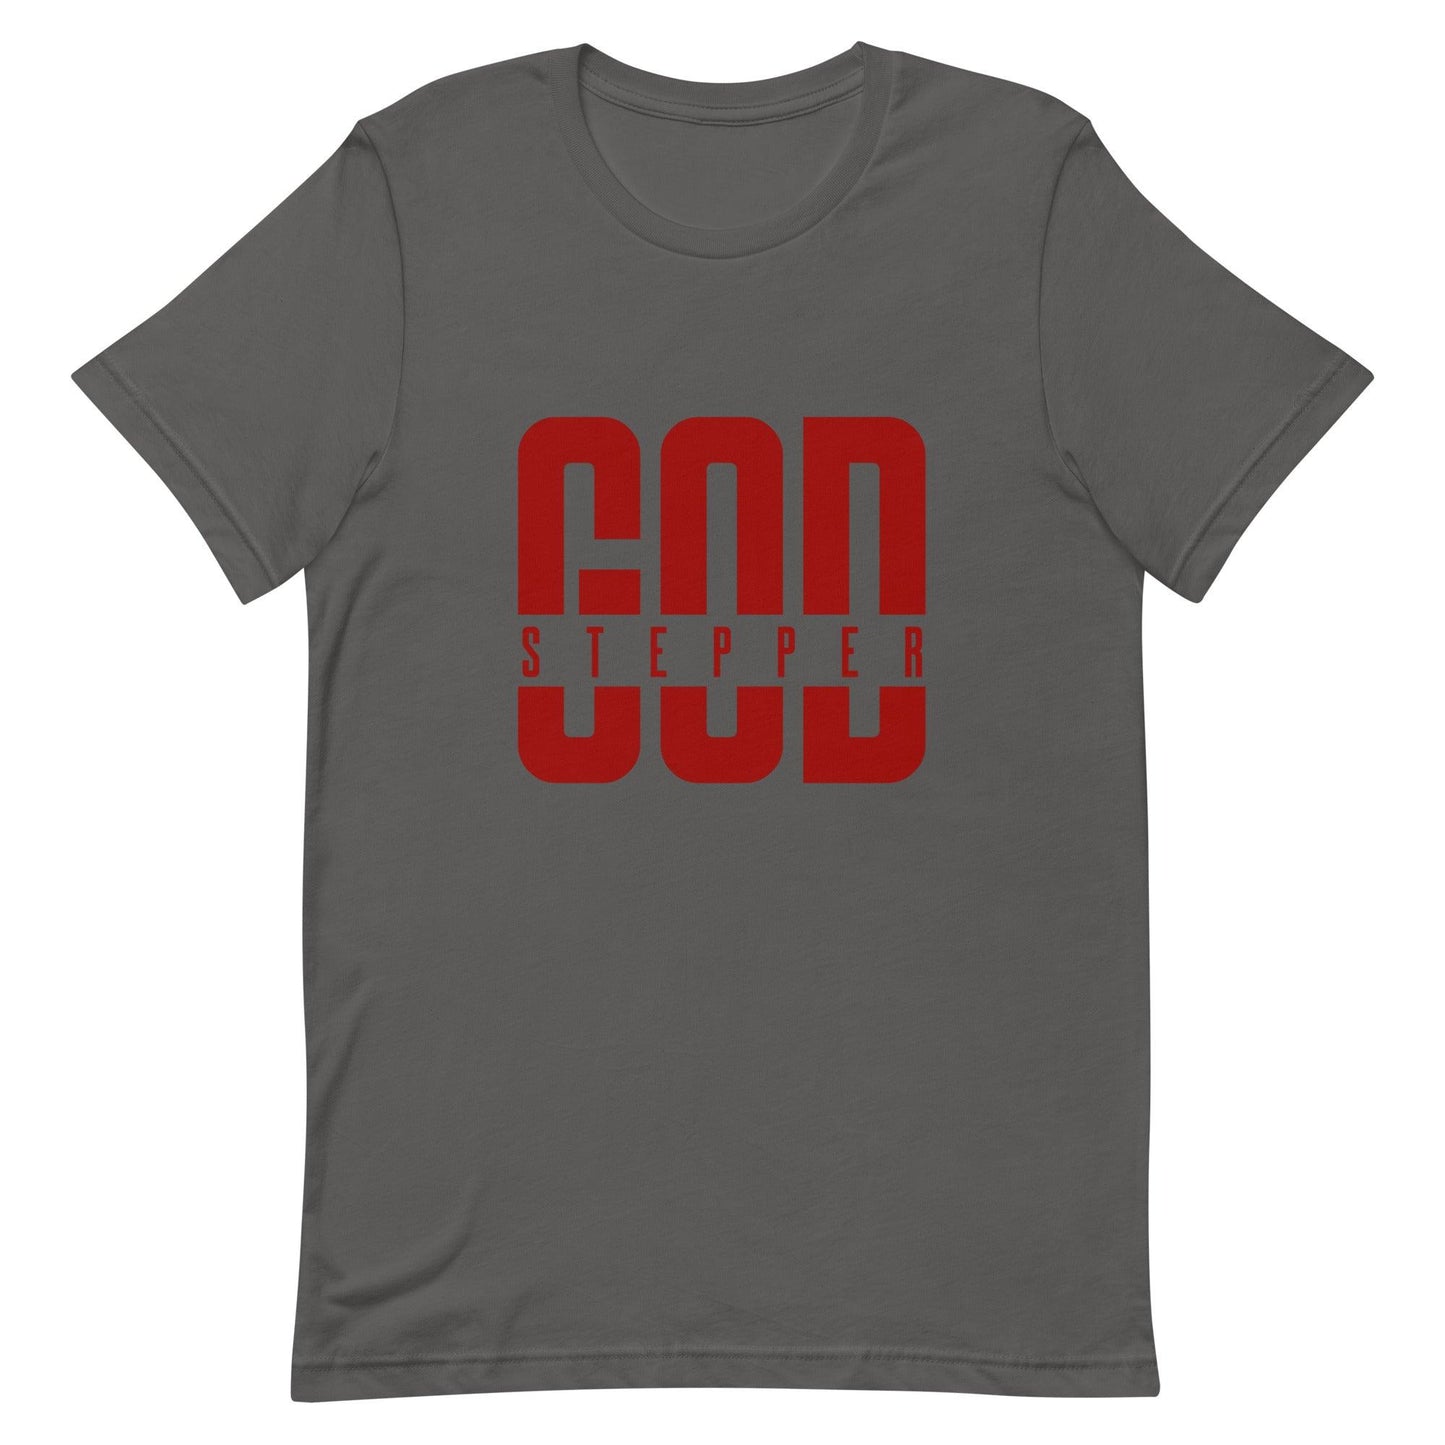 Brylan Lanier "God Stepper" t-shirt - Fan Arch